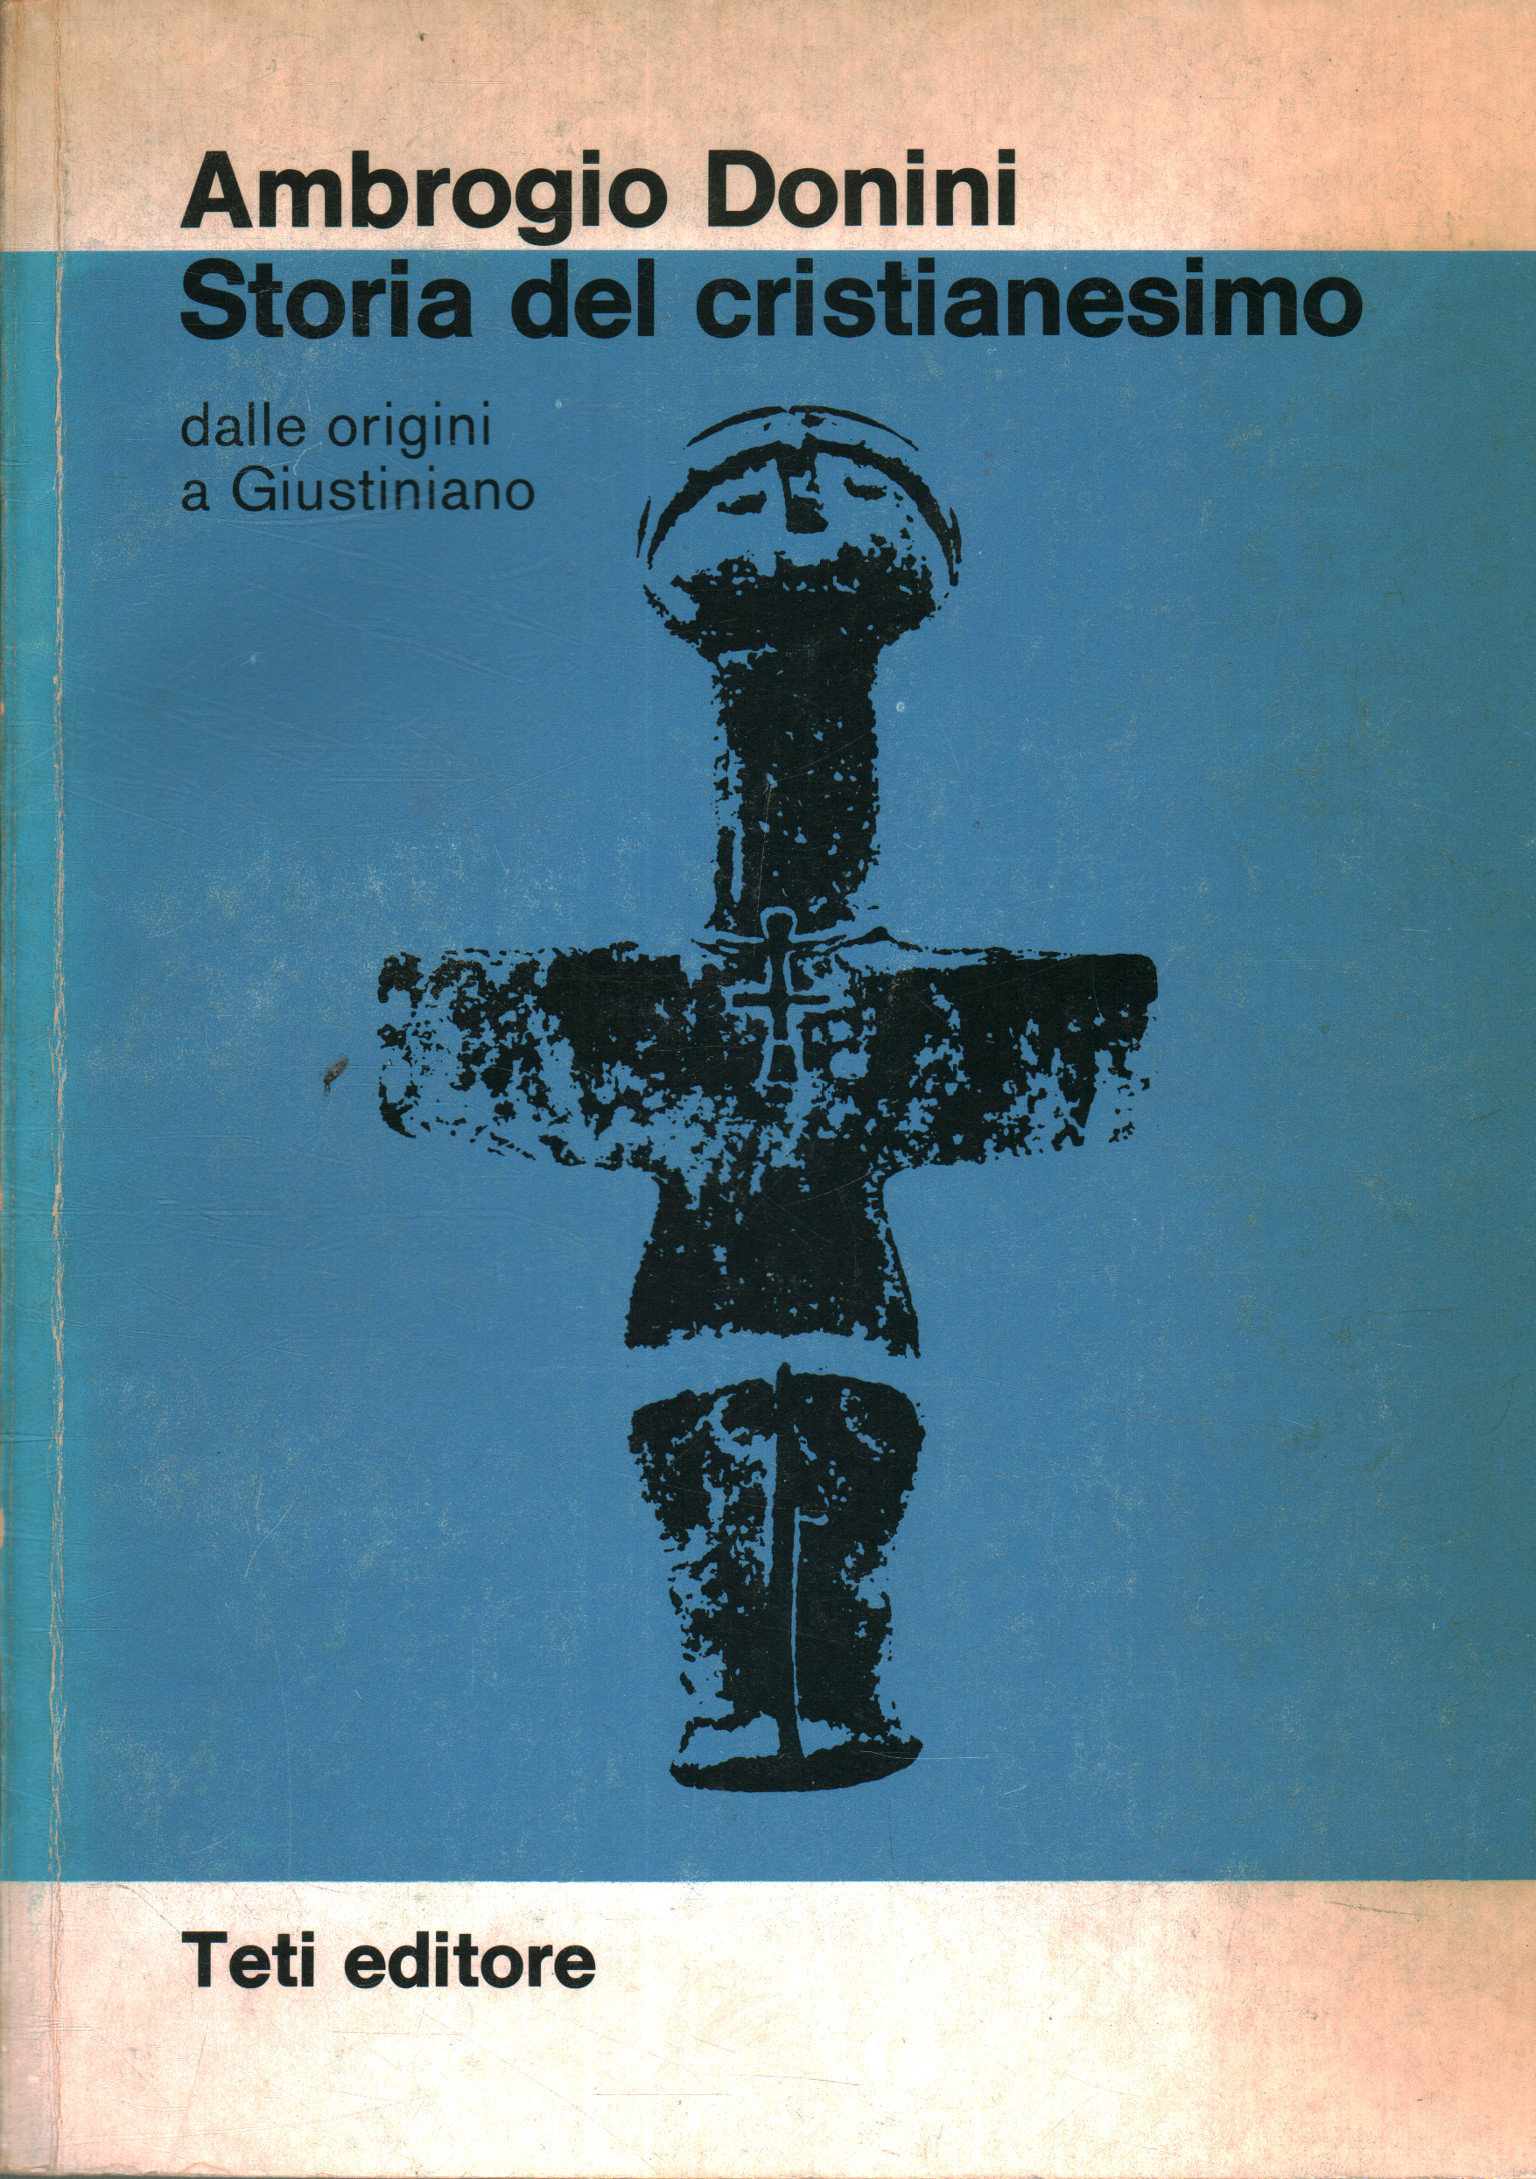 Storia del cristianesimo, Ambrogio Donini